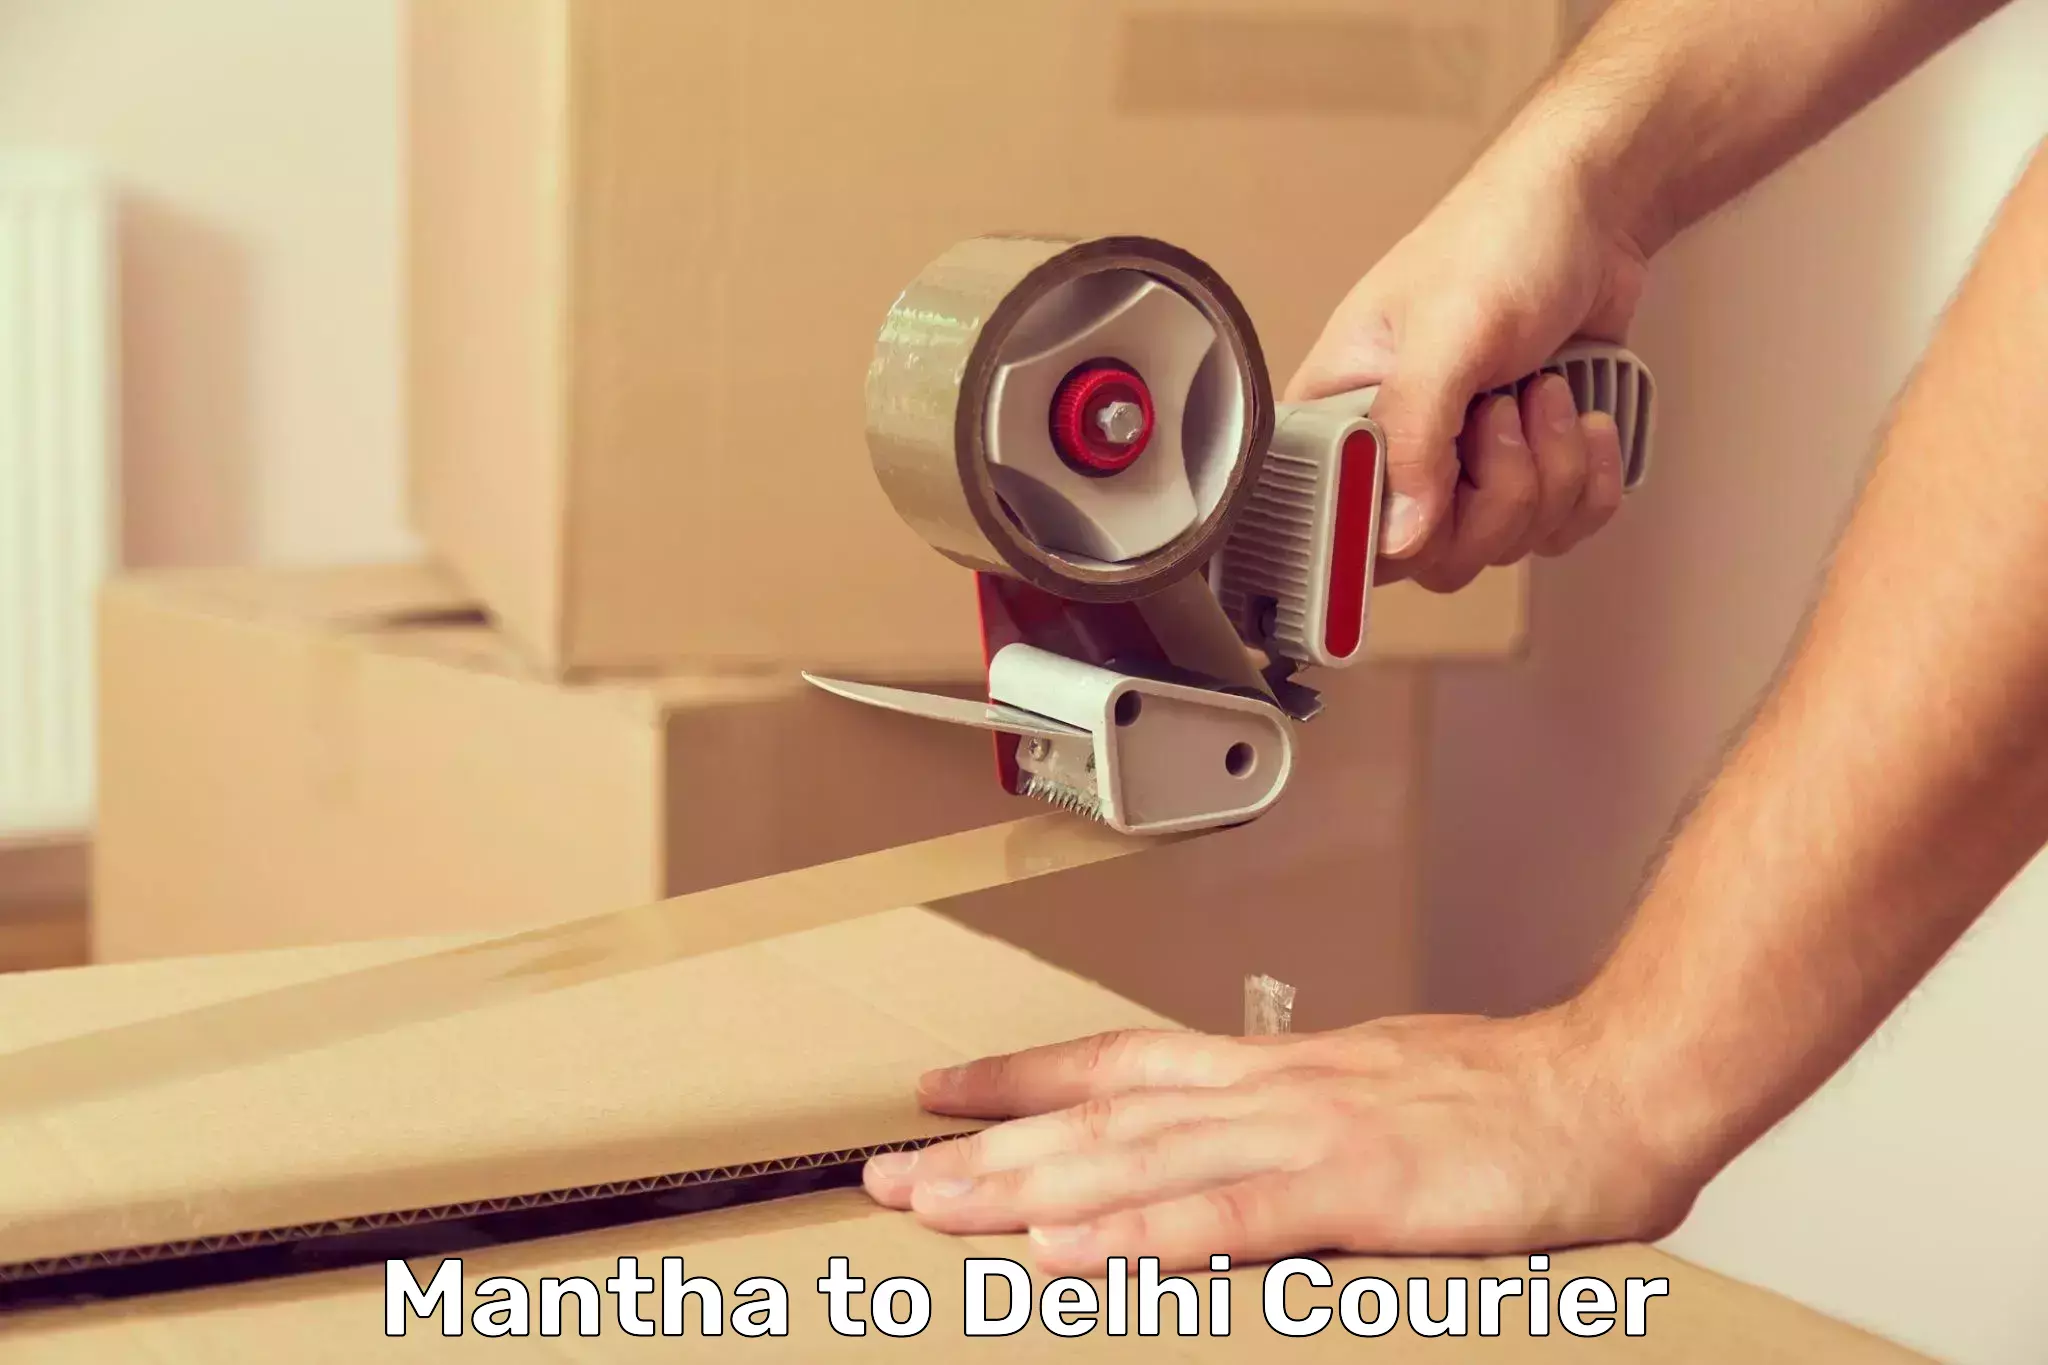 Smart logistics solutions Mantha to Delhi